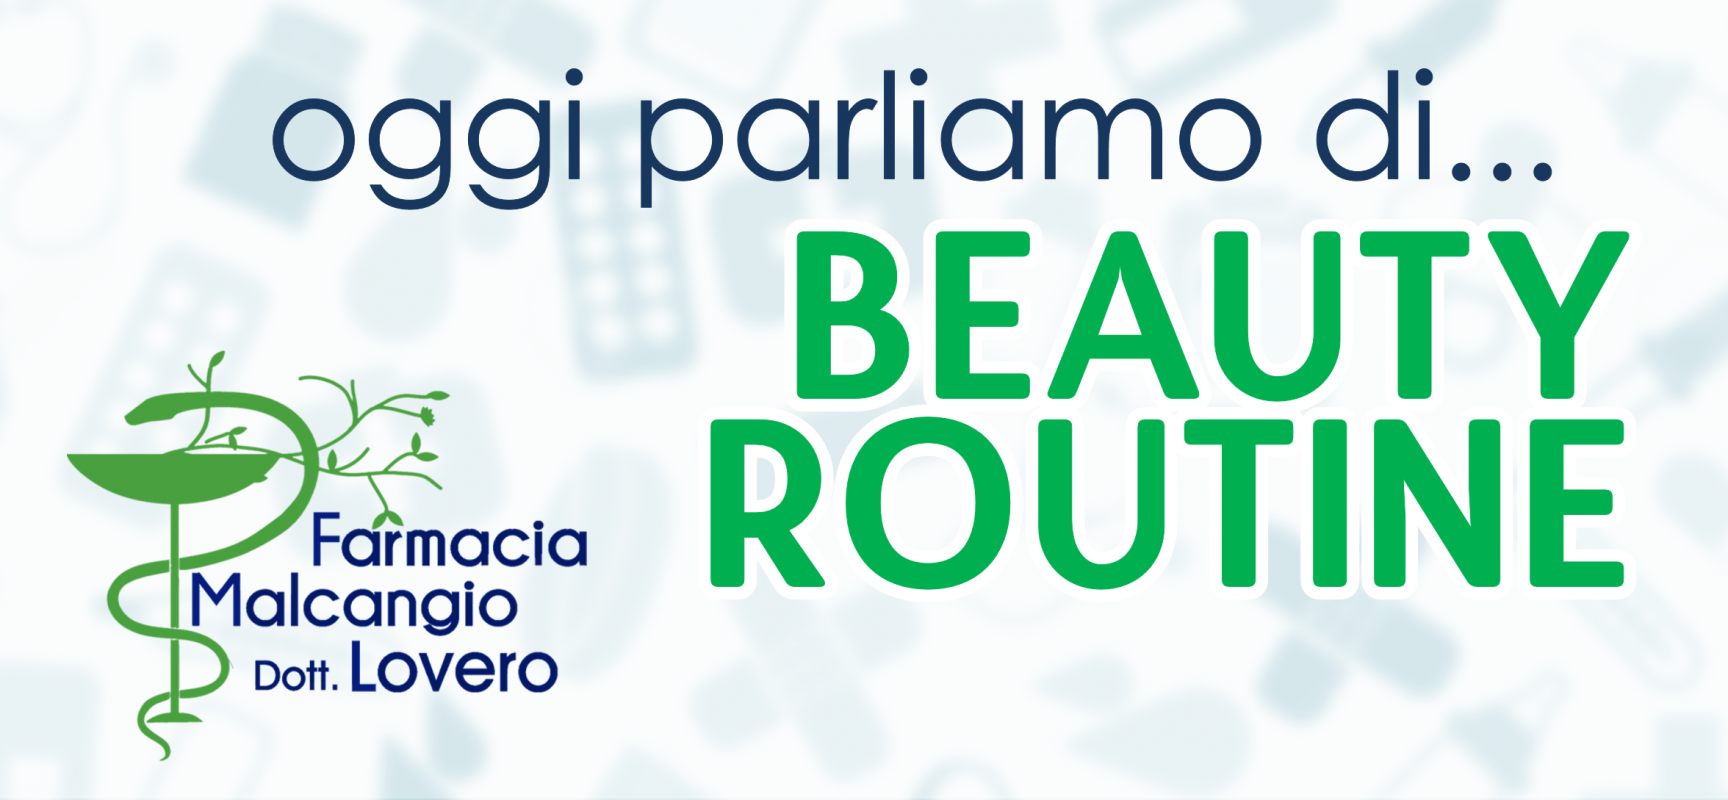 “Oggi parliamo di…” beauty routine, rubrica a cura di Farmacia Malcangio